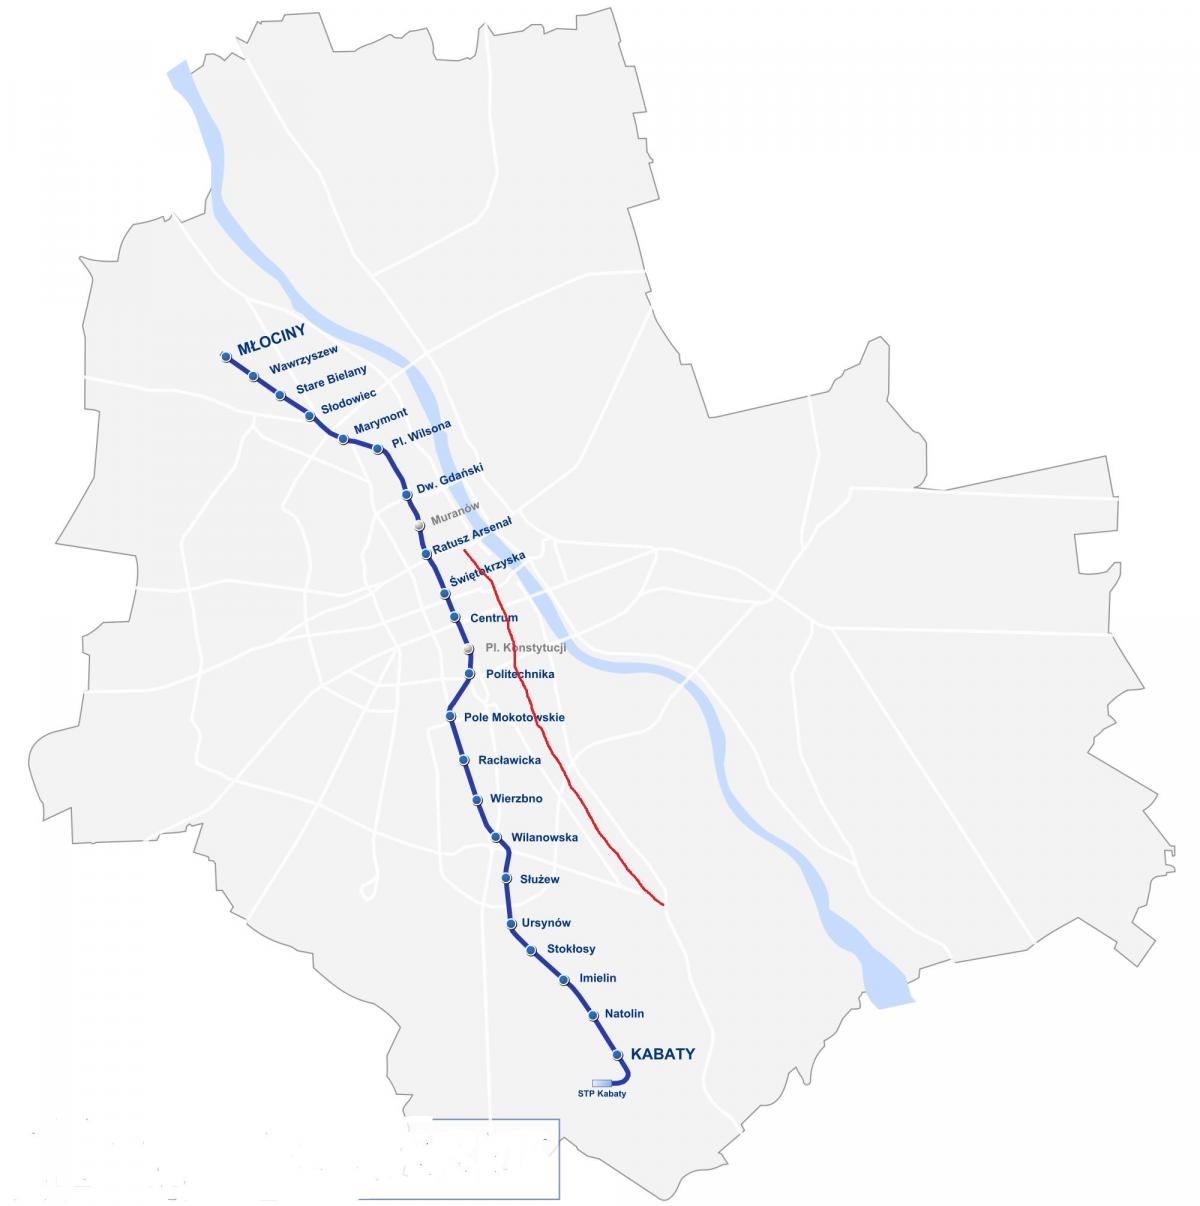 Mapa de la ruta real de Varsovia 